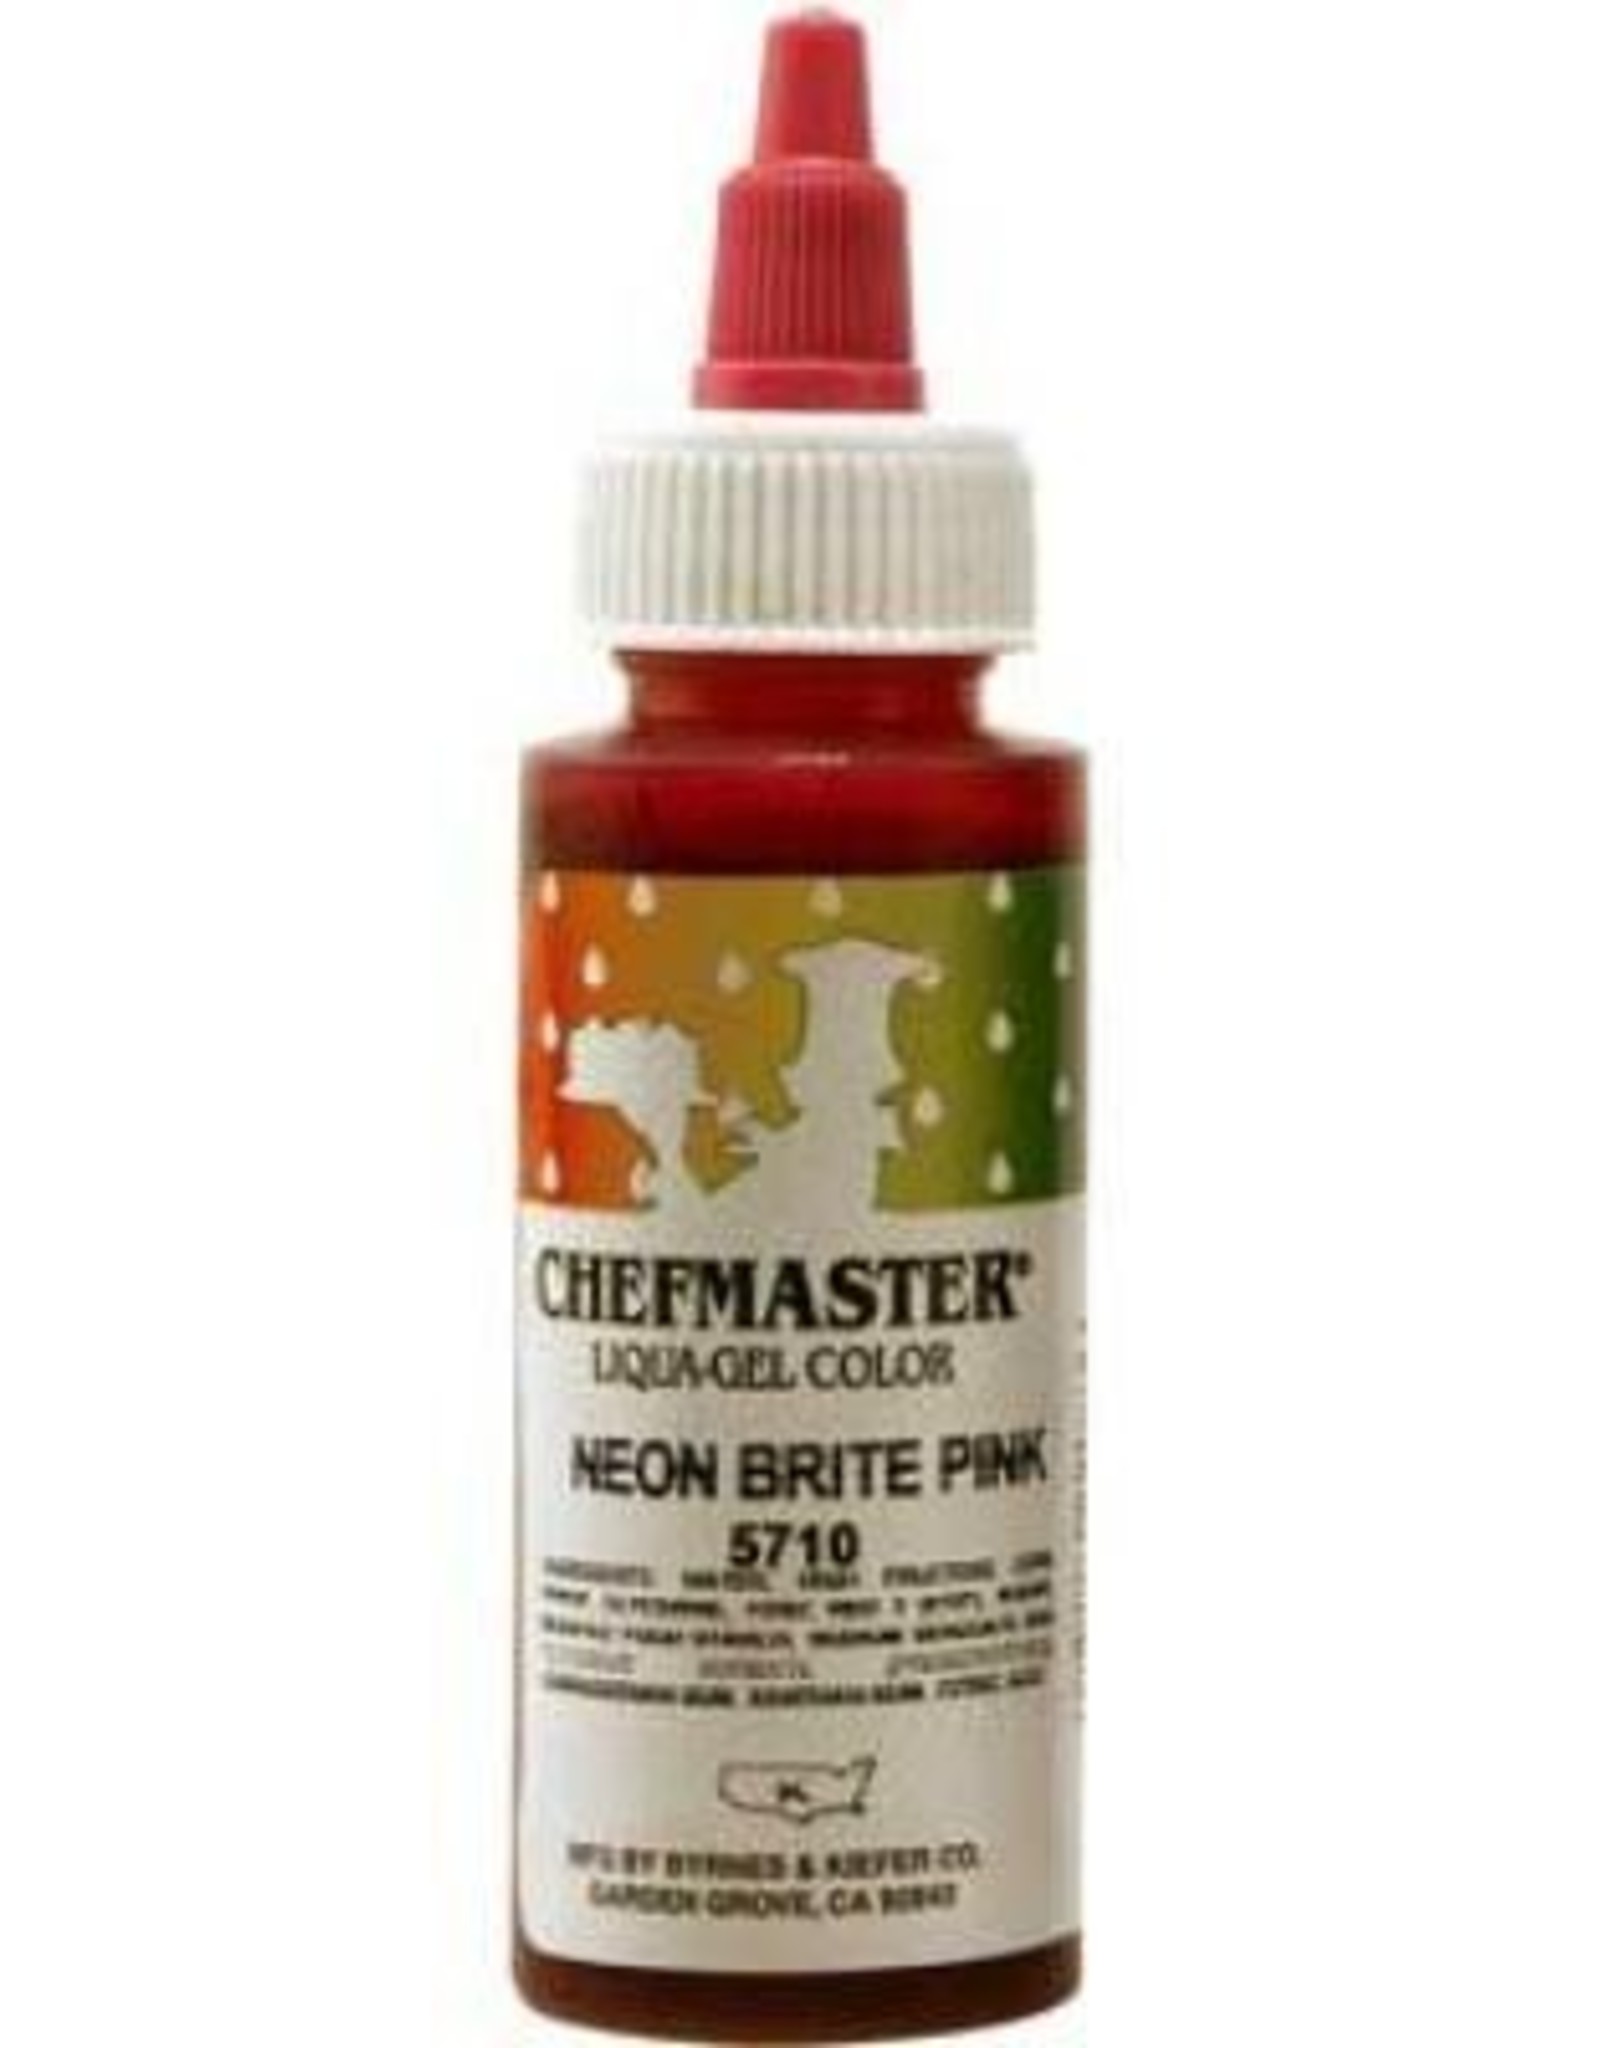 Neon Pink Chefmaster Liqua-gel 2.3 ounce